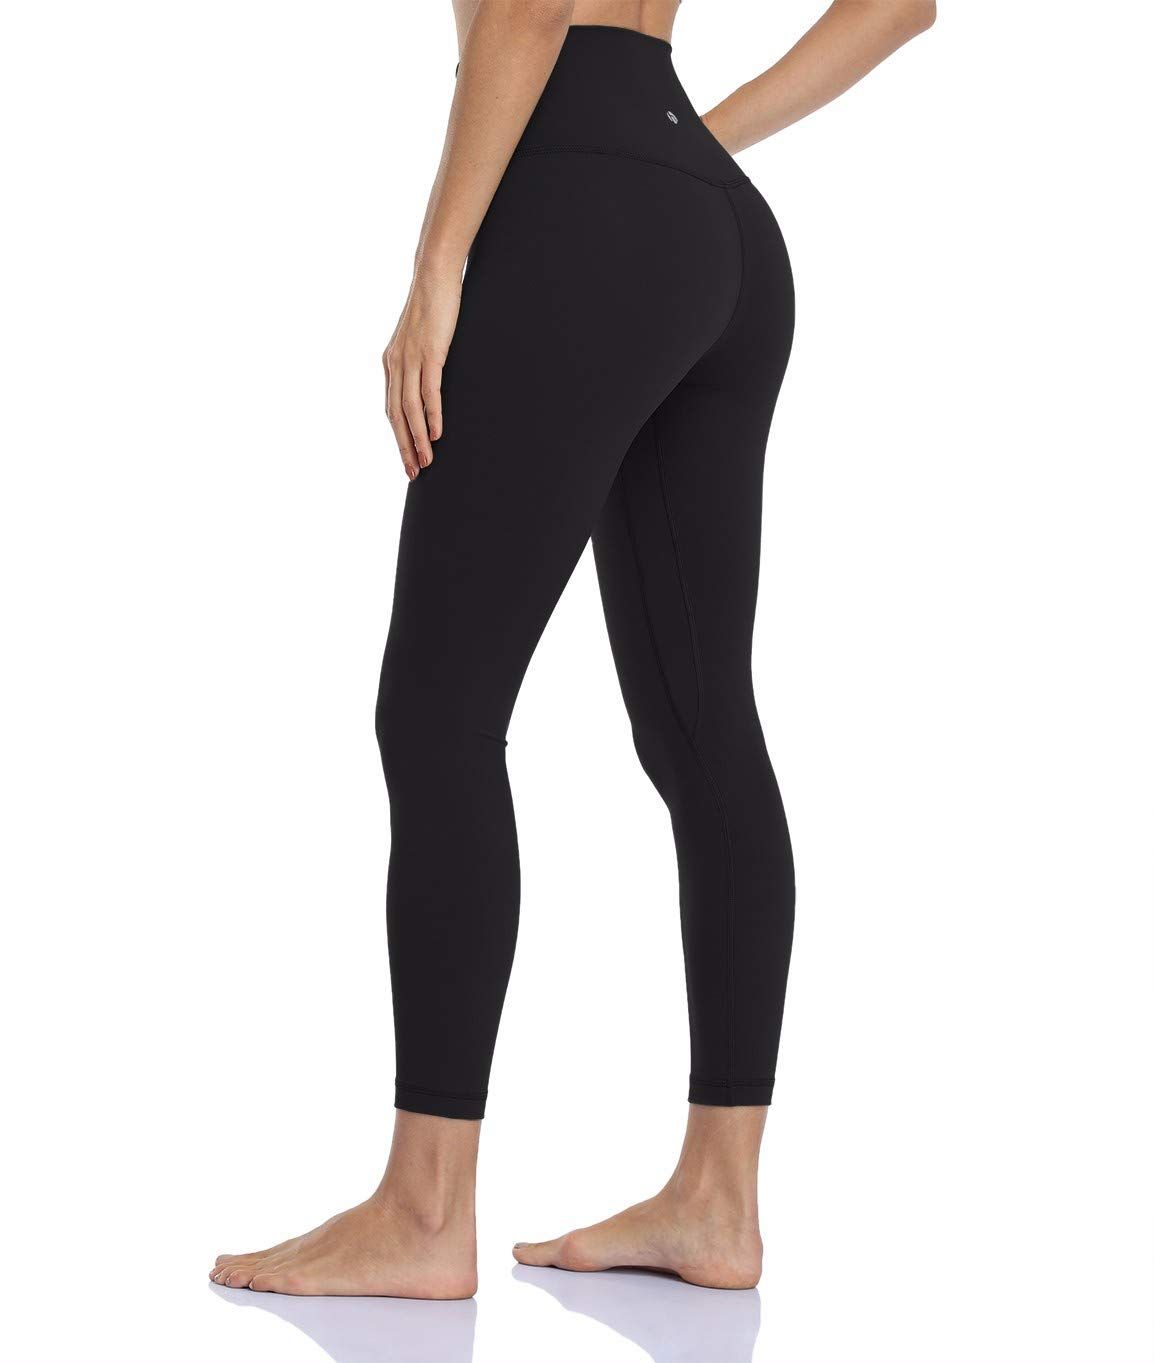 Best non-athletic black leggings? : r/femalefashionadvice